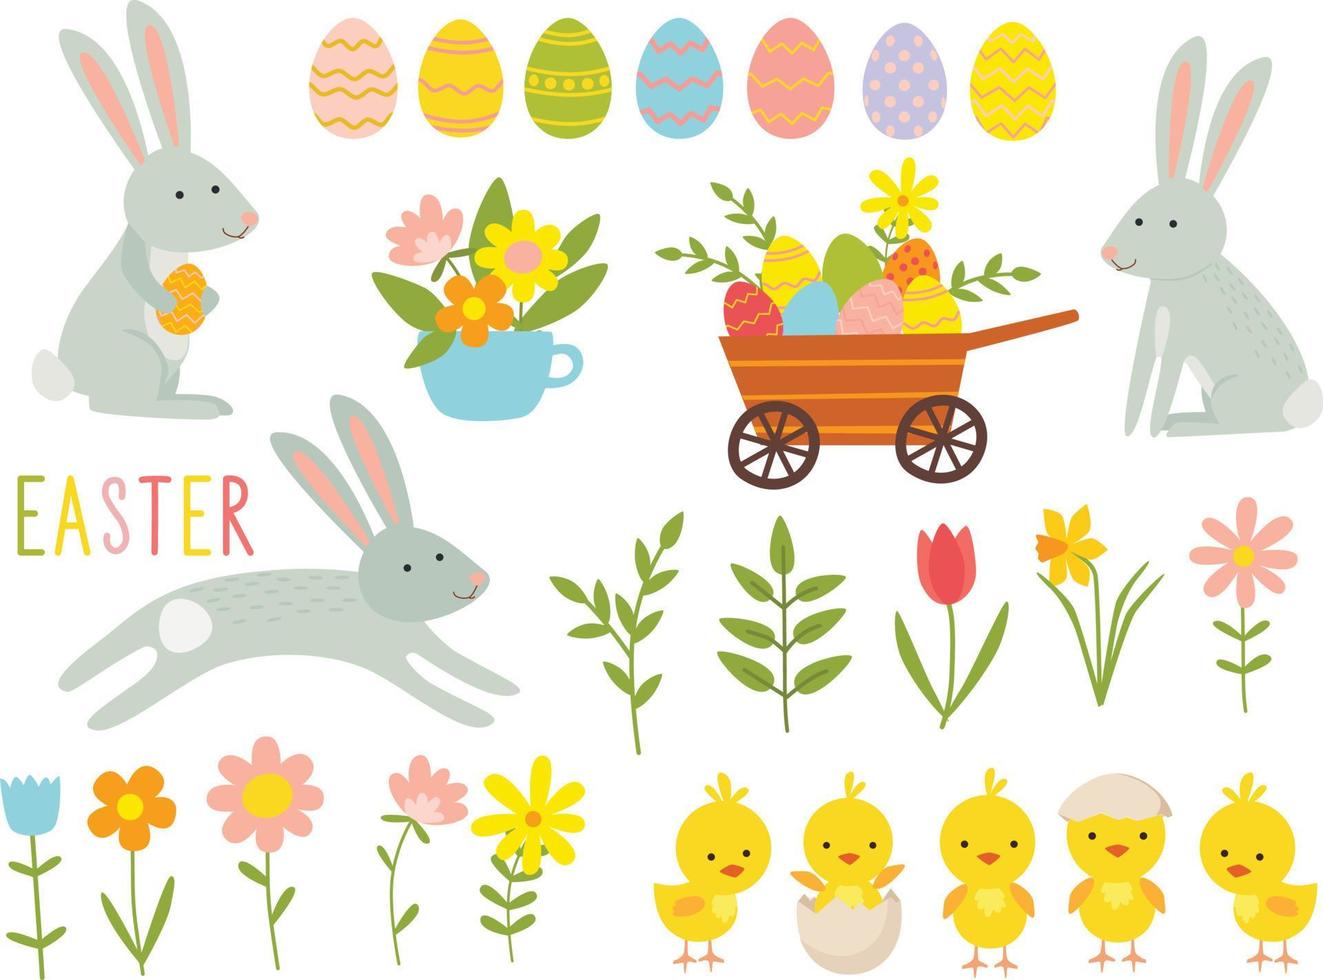 conjunto de lindos personajes de dibujos animados de Pascua y elementos de diseño. conejito de pascua, pollos, huevos y flores. ilustración vectorial vector